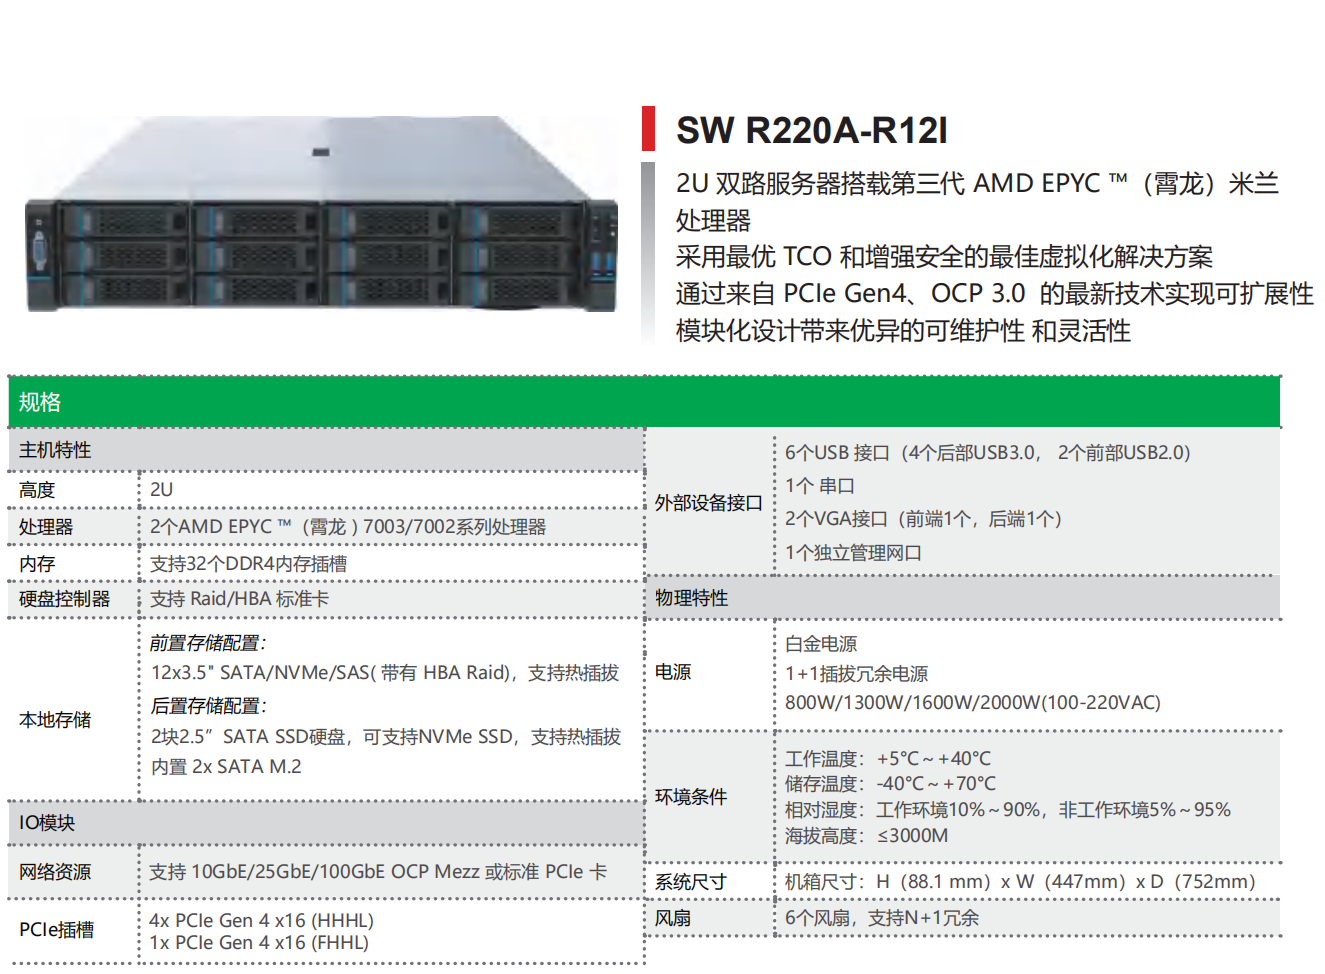 AMD 平台服务器—SW R220A-R12I